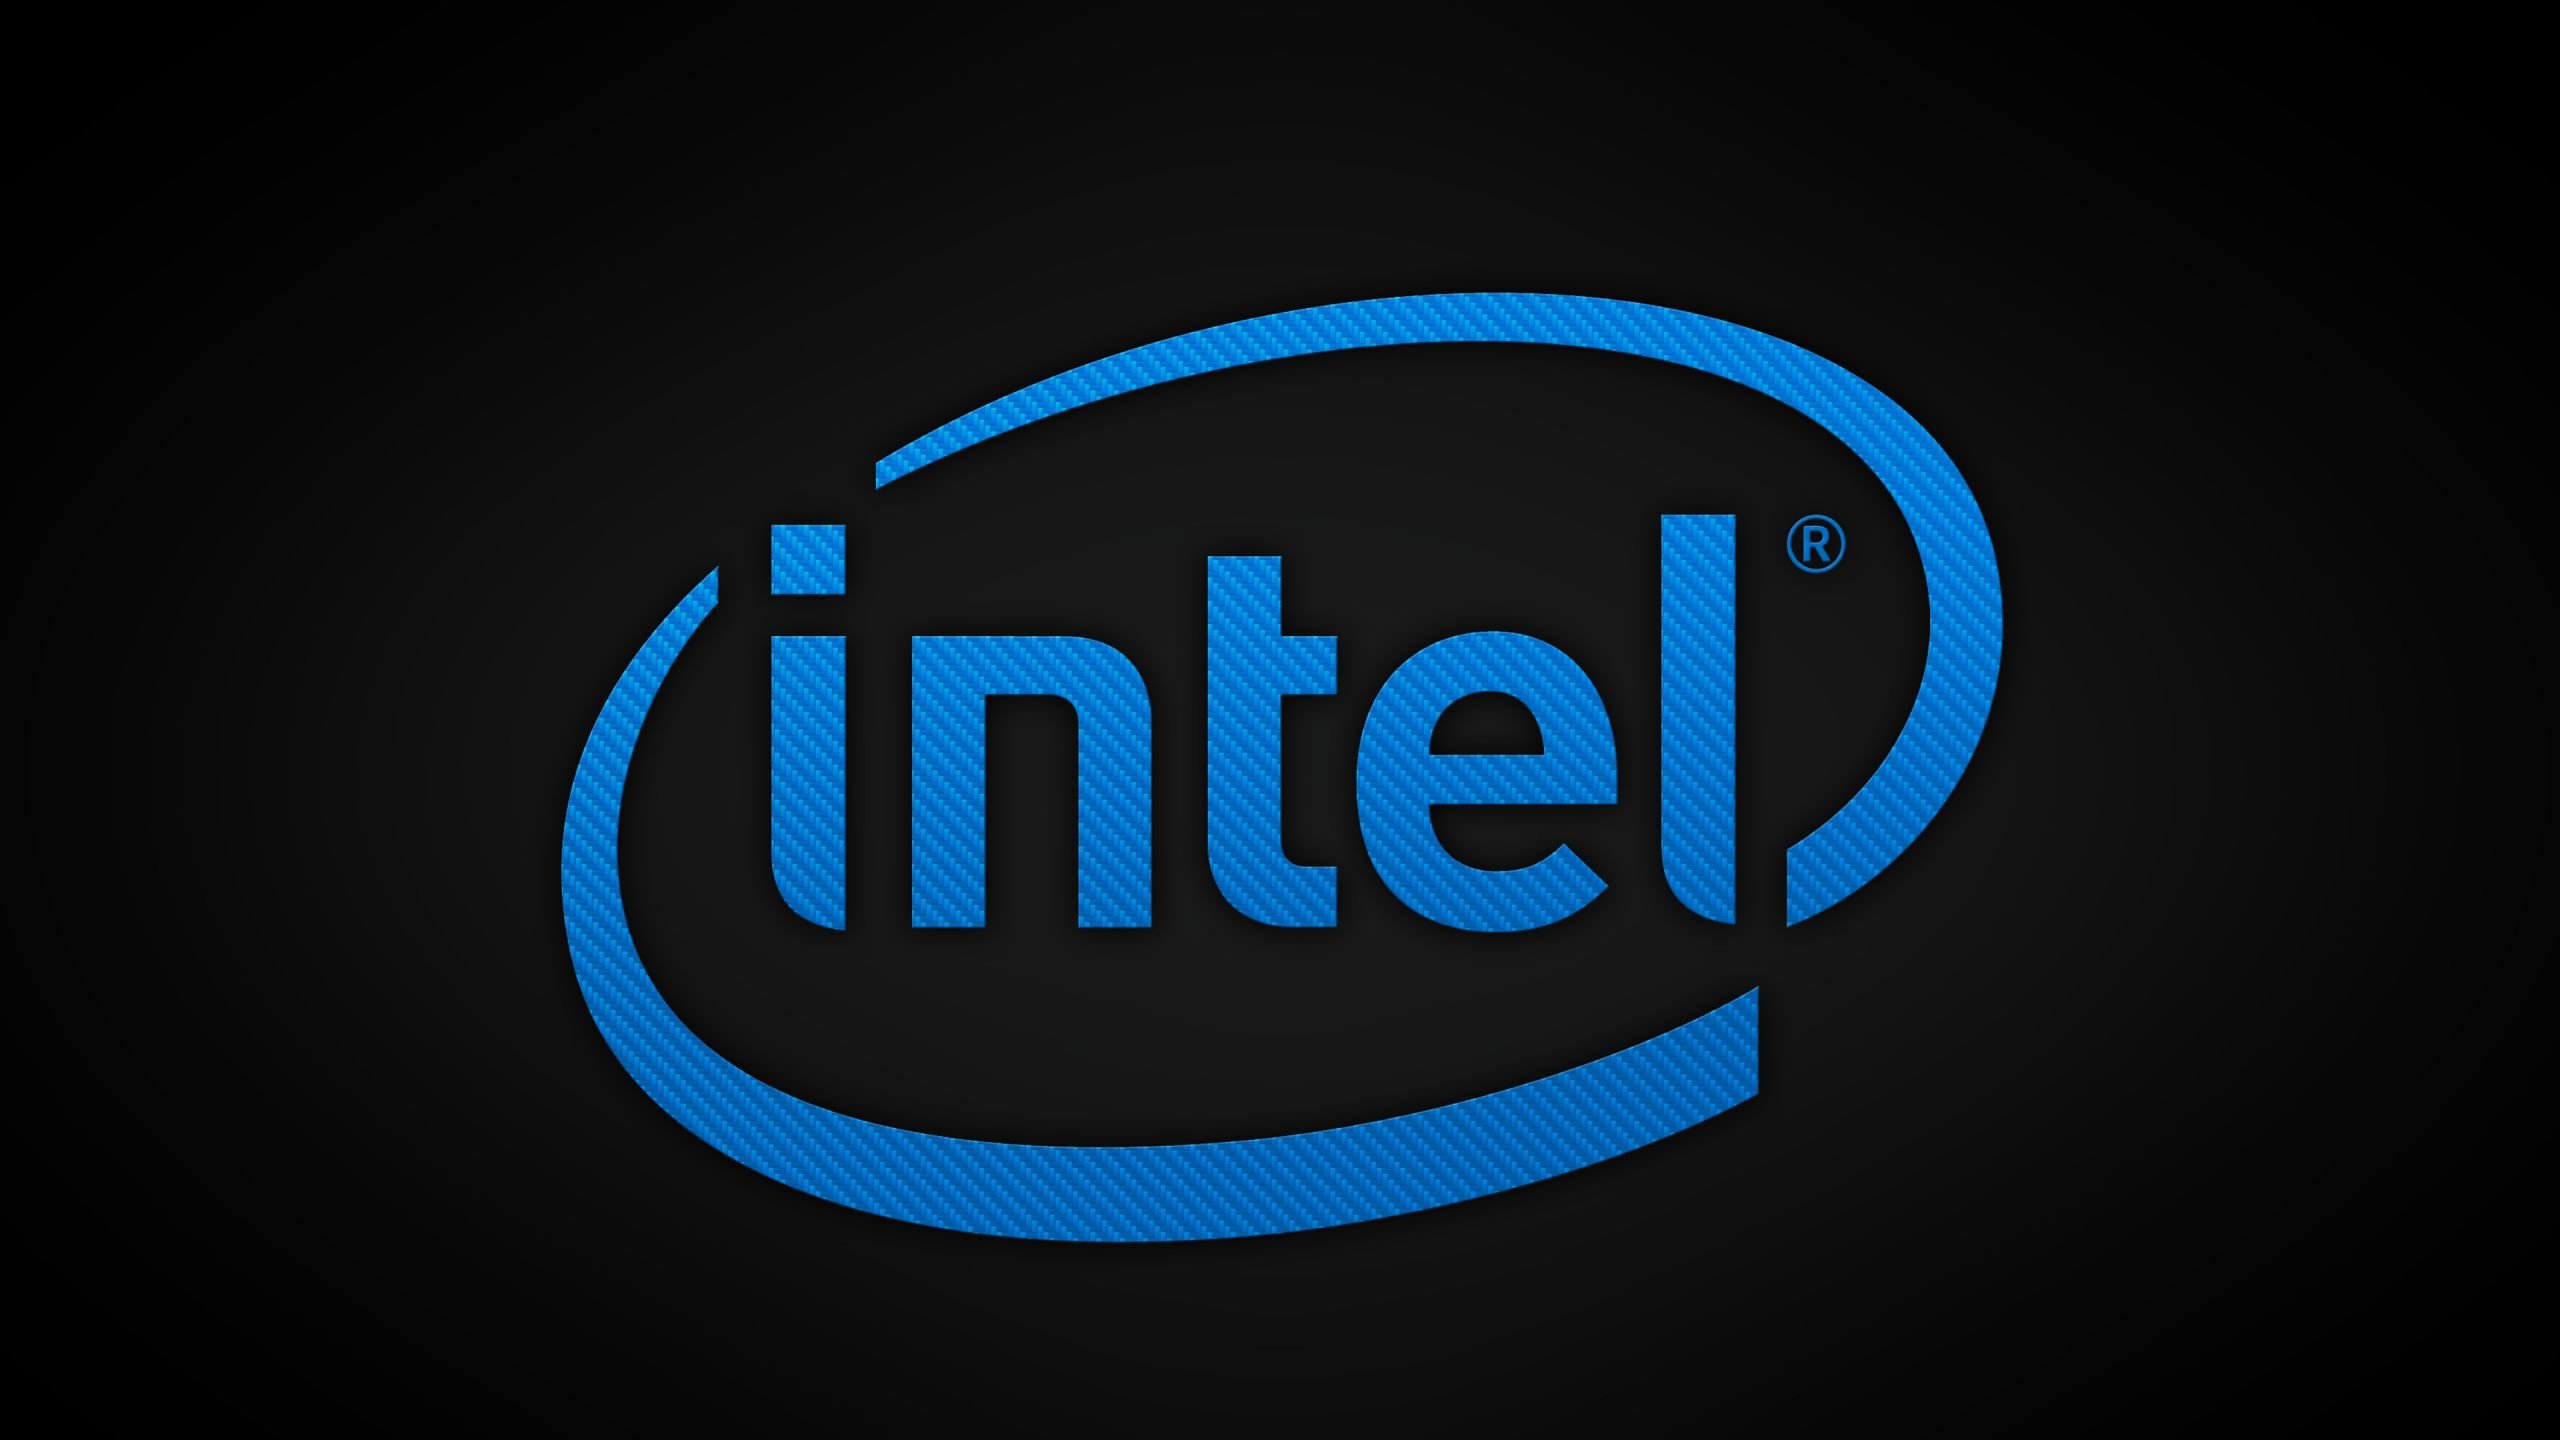 Обои Intel